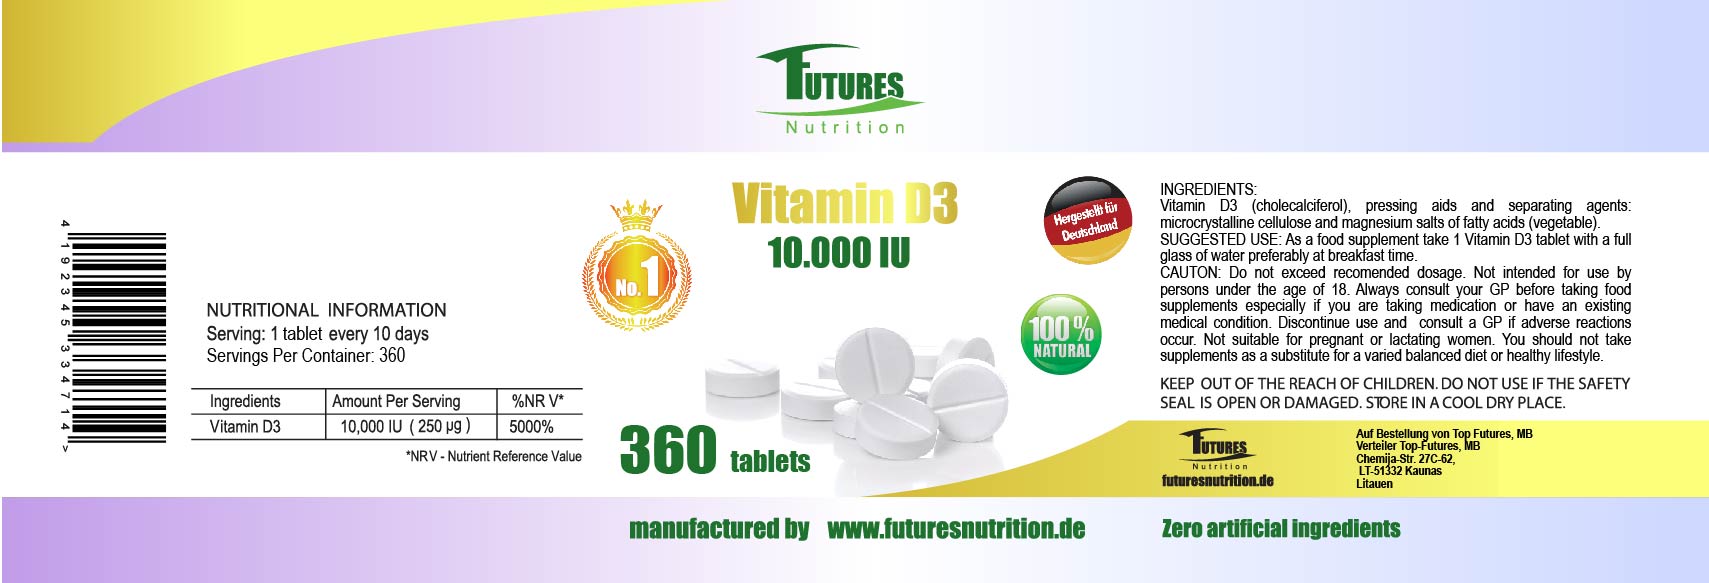 10 x Vitamin D3 10000i.e 3600 tablets